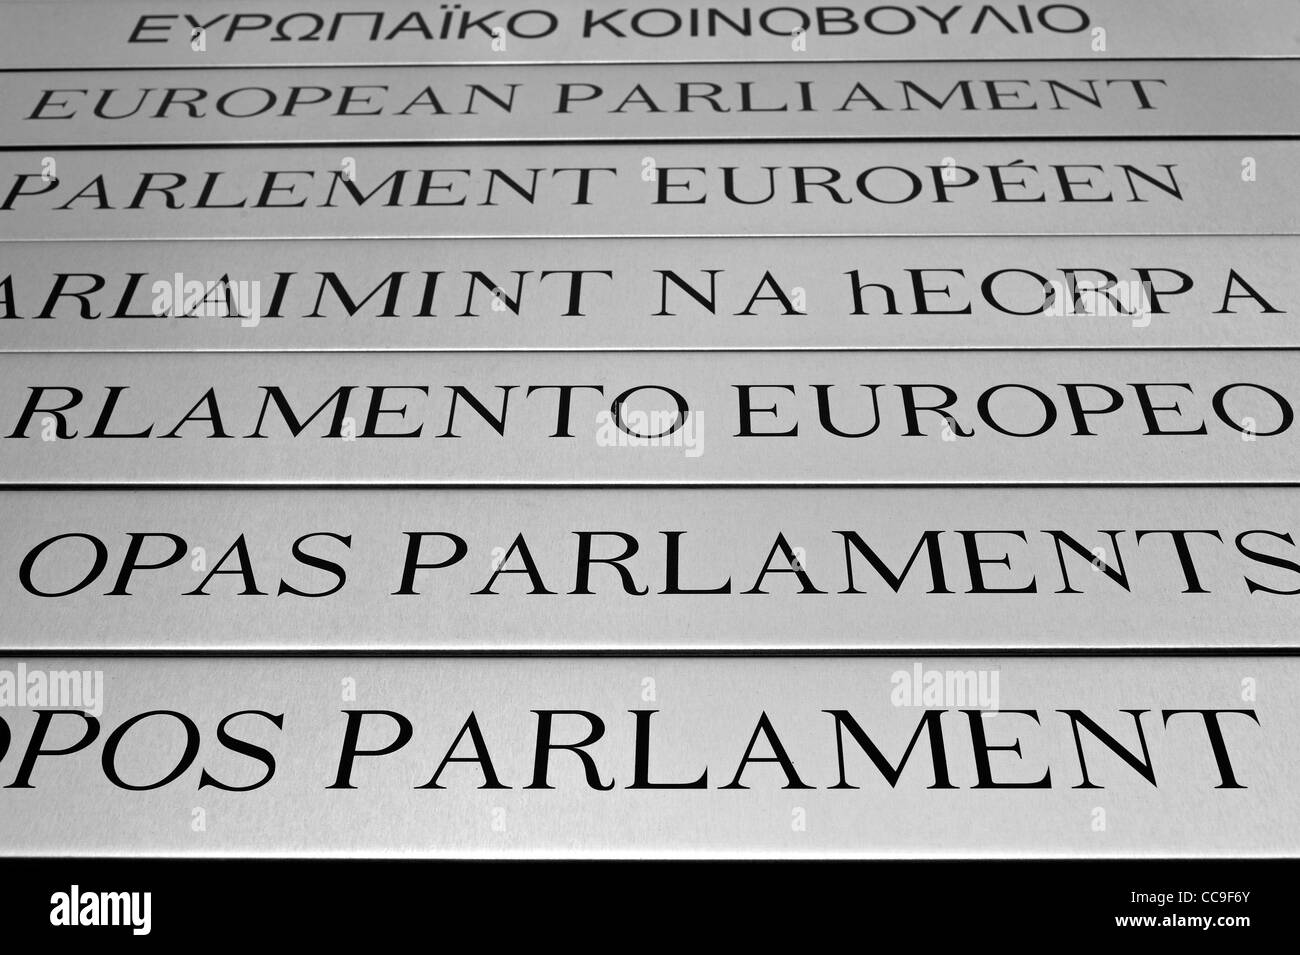 Les plaques signalétiques des Parlement européen dans différentes langues de l'Europe dans le quartier Léopold / Quartier Léopold, Bruxelles, Belgique Banque D'Images